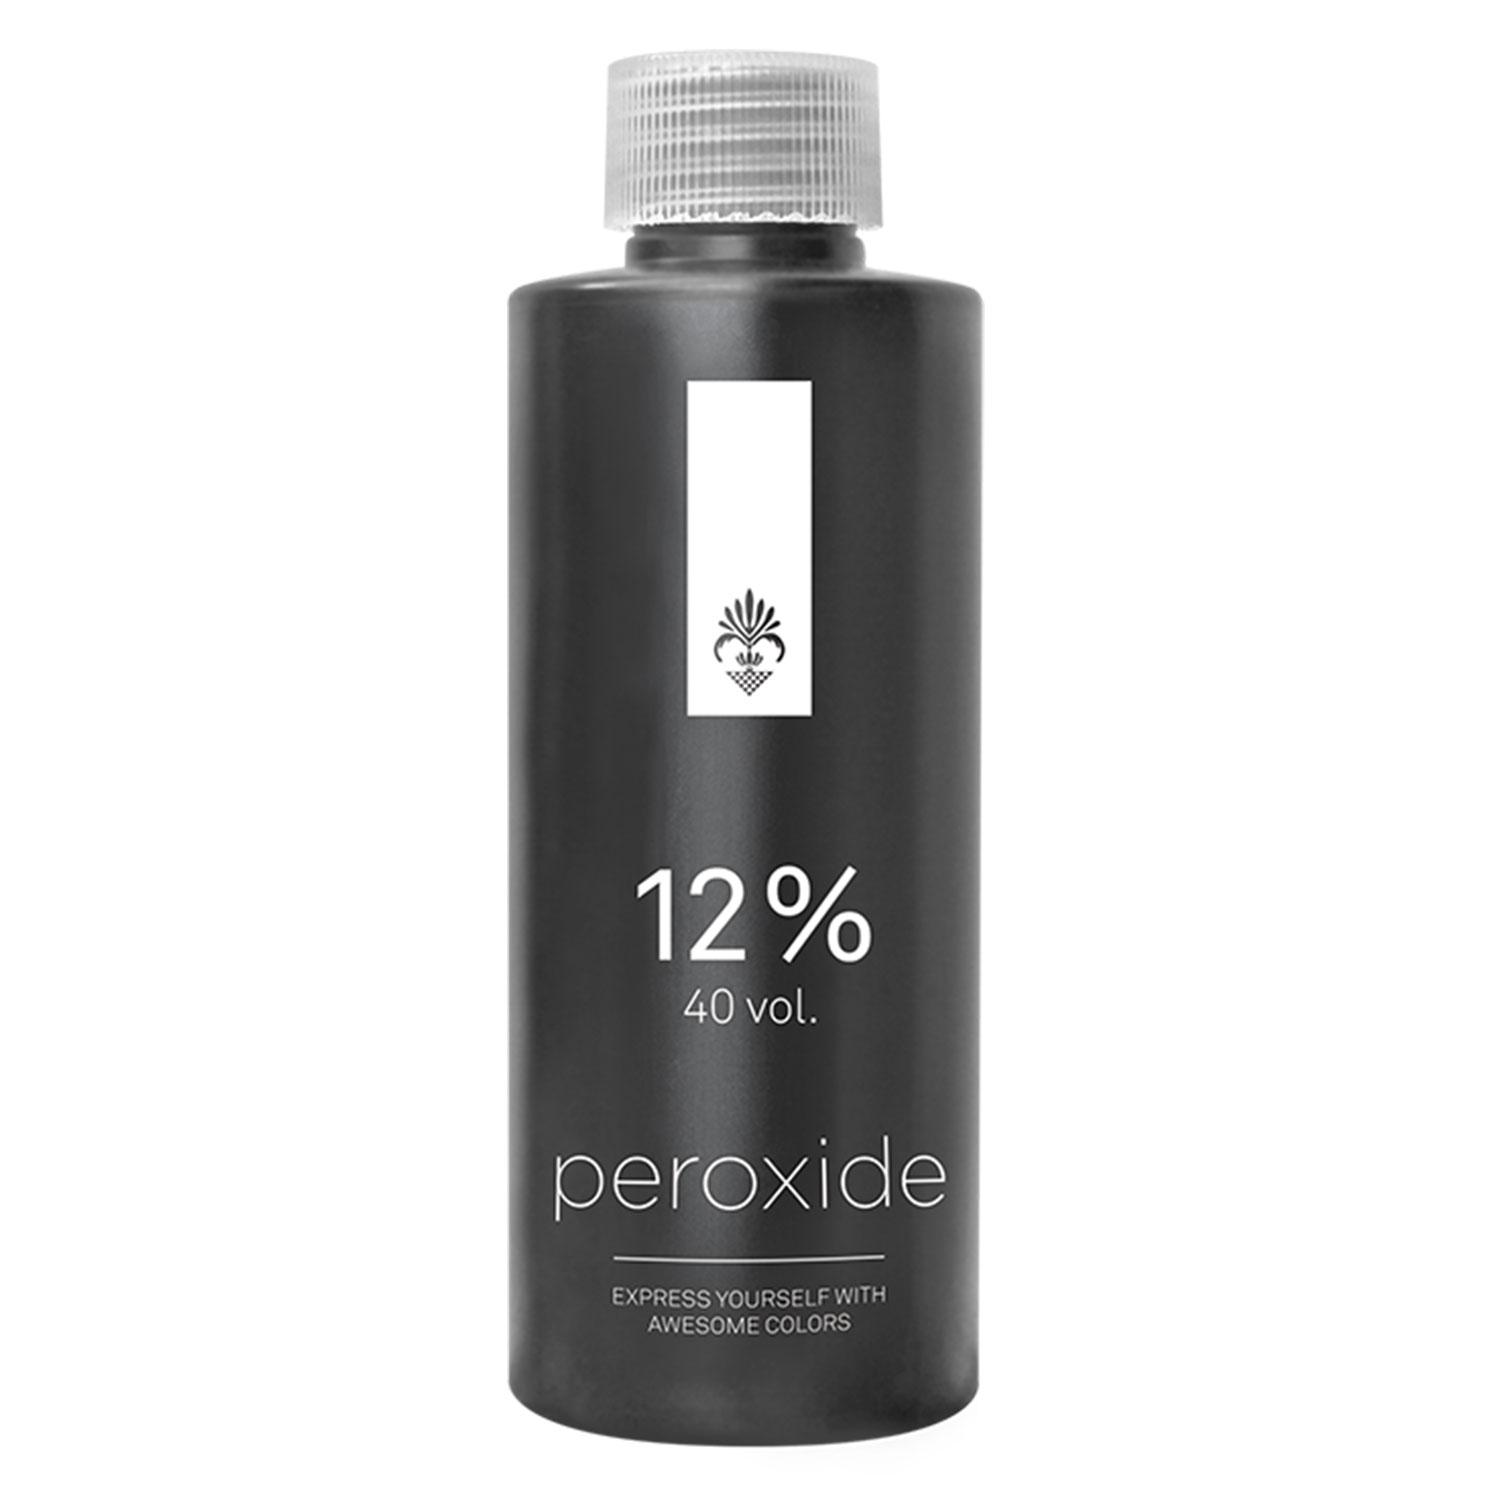 AWESOMEcolors - Peroxide 12%